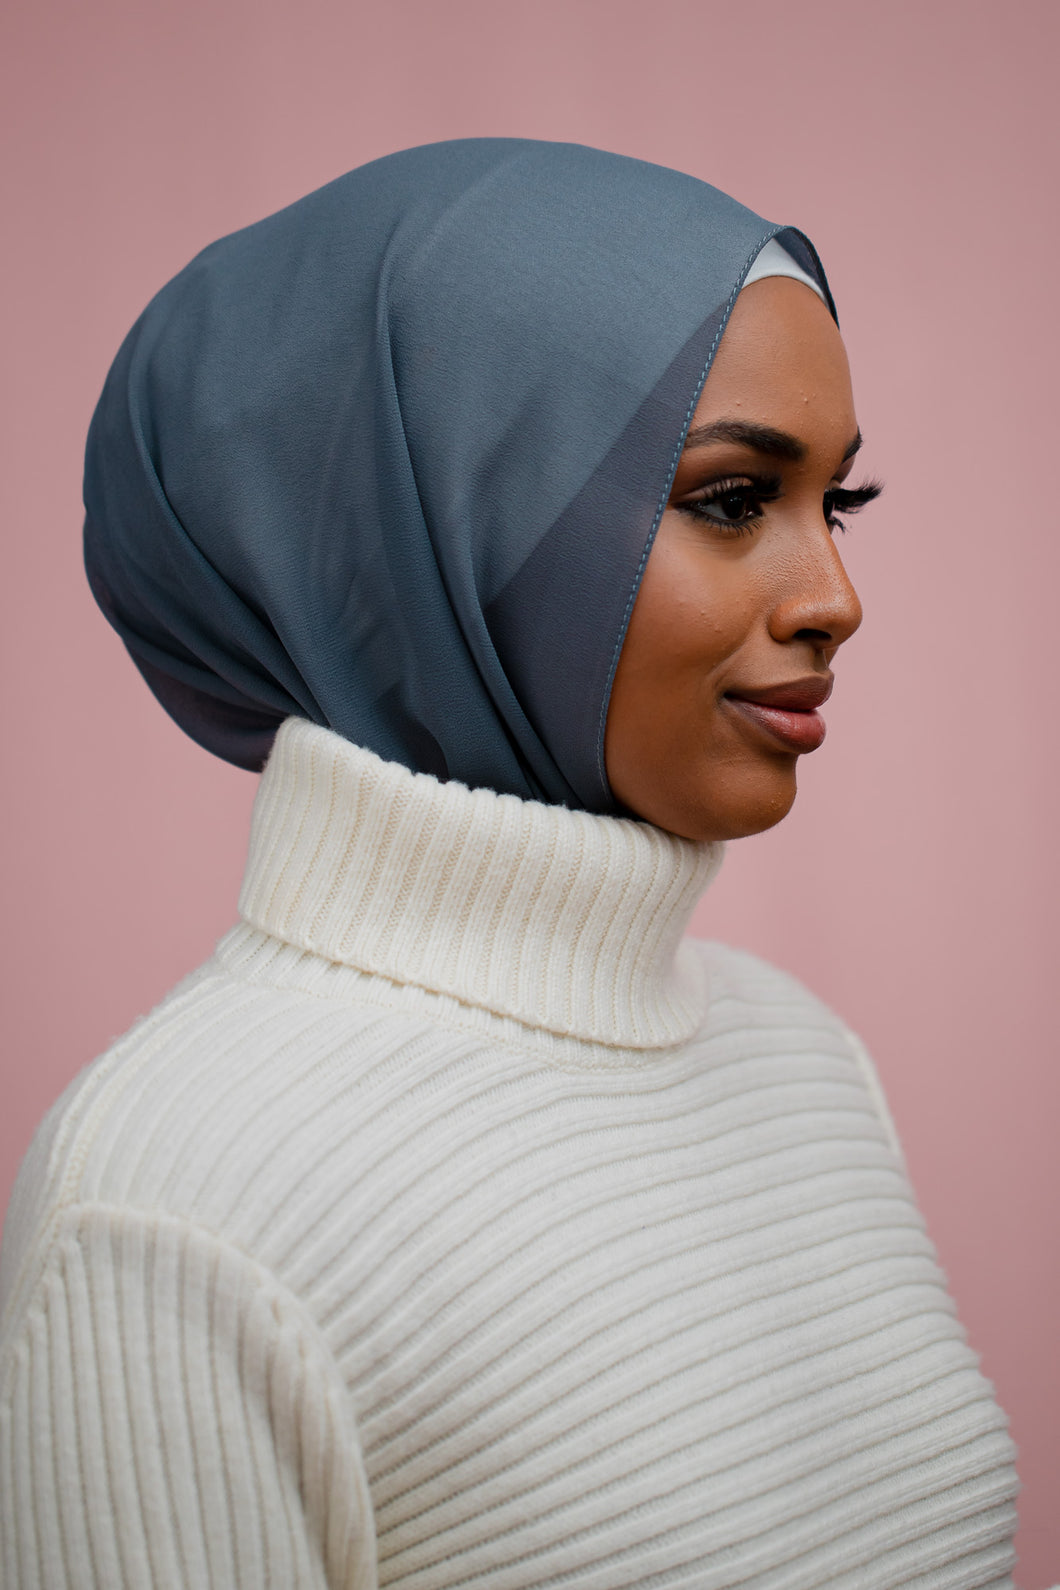 The Steel Classic Chiffon Hijab